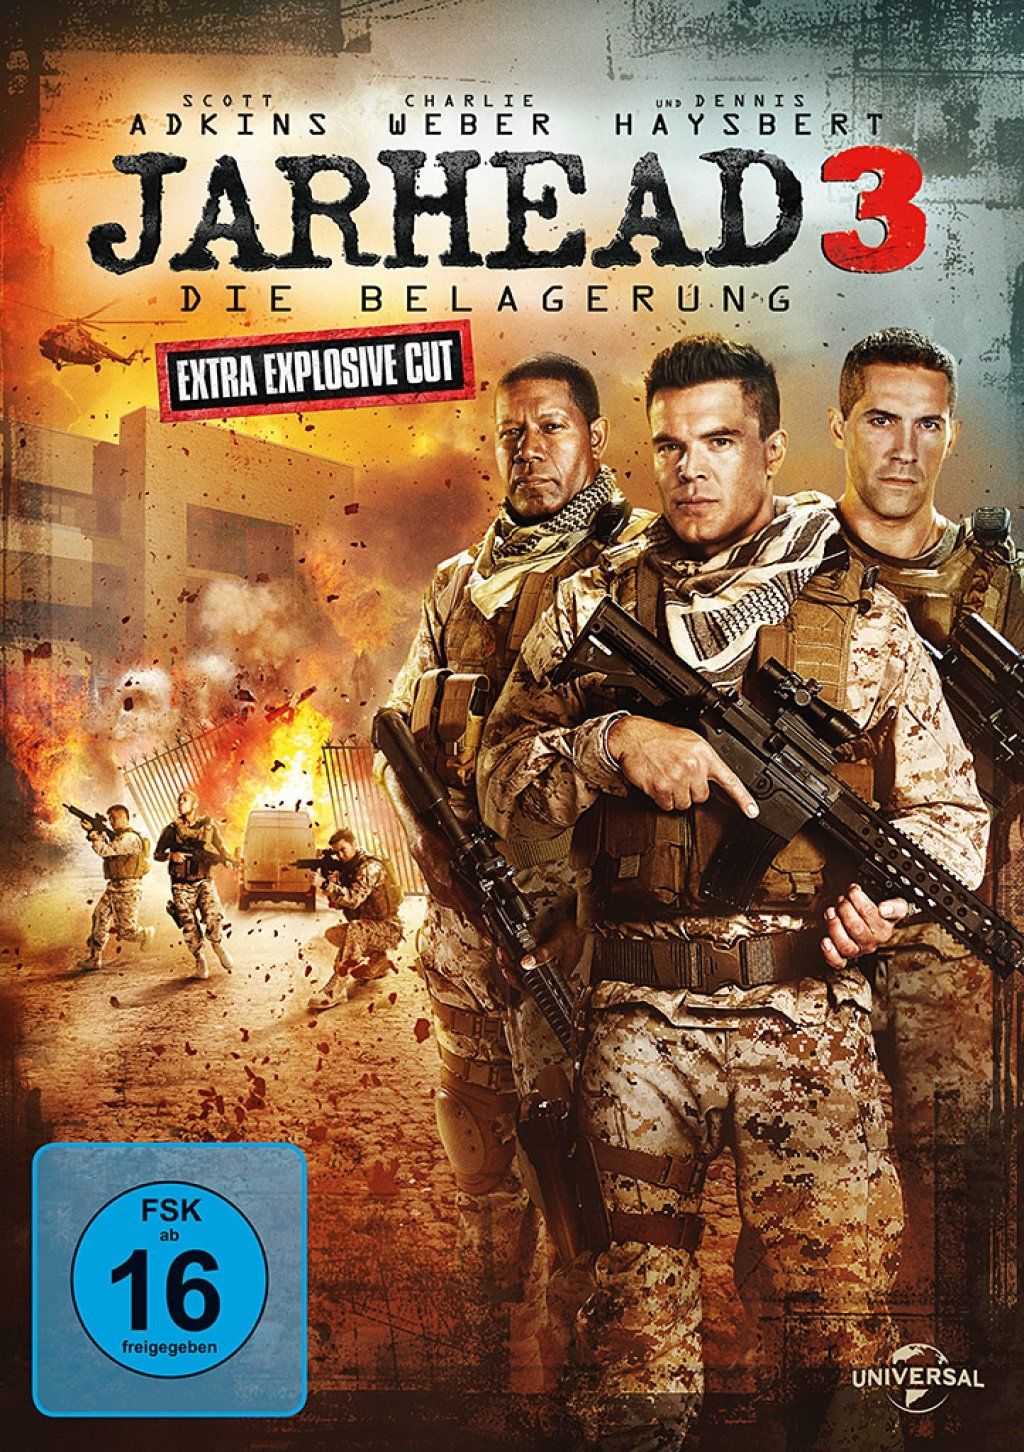 Jarhead 3: Die Belagerung (Extra Explosive Cut)